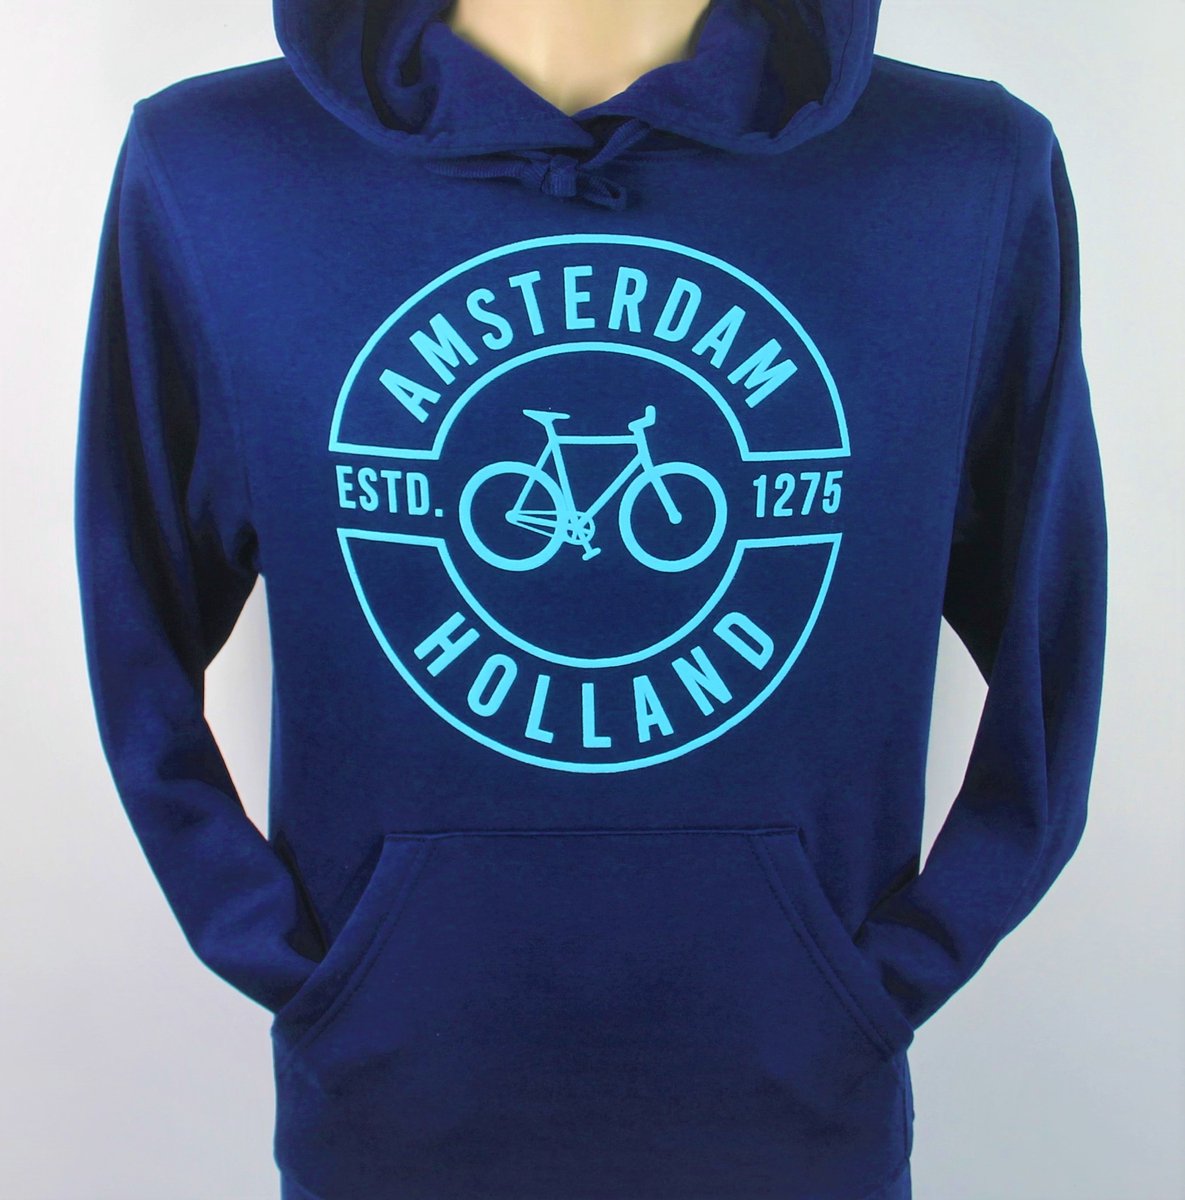 Hooded Sweater - Met Trekkoord - Capuchon - Chill - Trui - Vest - met capuchon - Outdoor - Fiets - Discover - 1275 -Amsterdam - Bike Town - Travel - Blauwe Fiets - Navy - Maat S